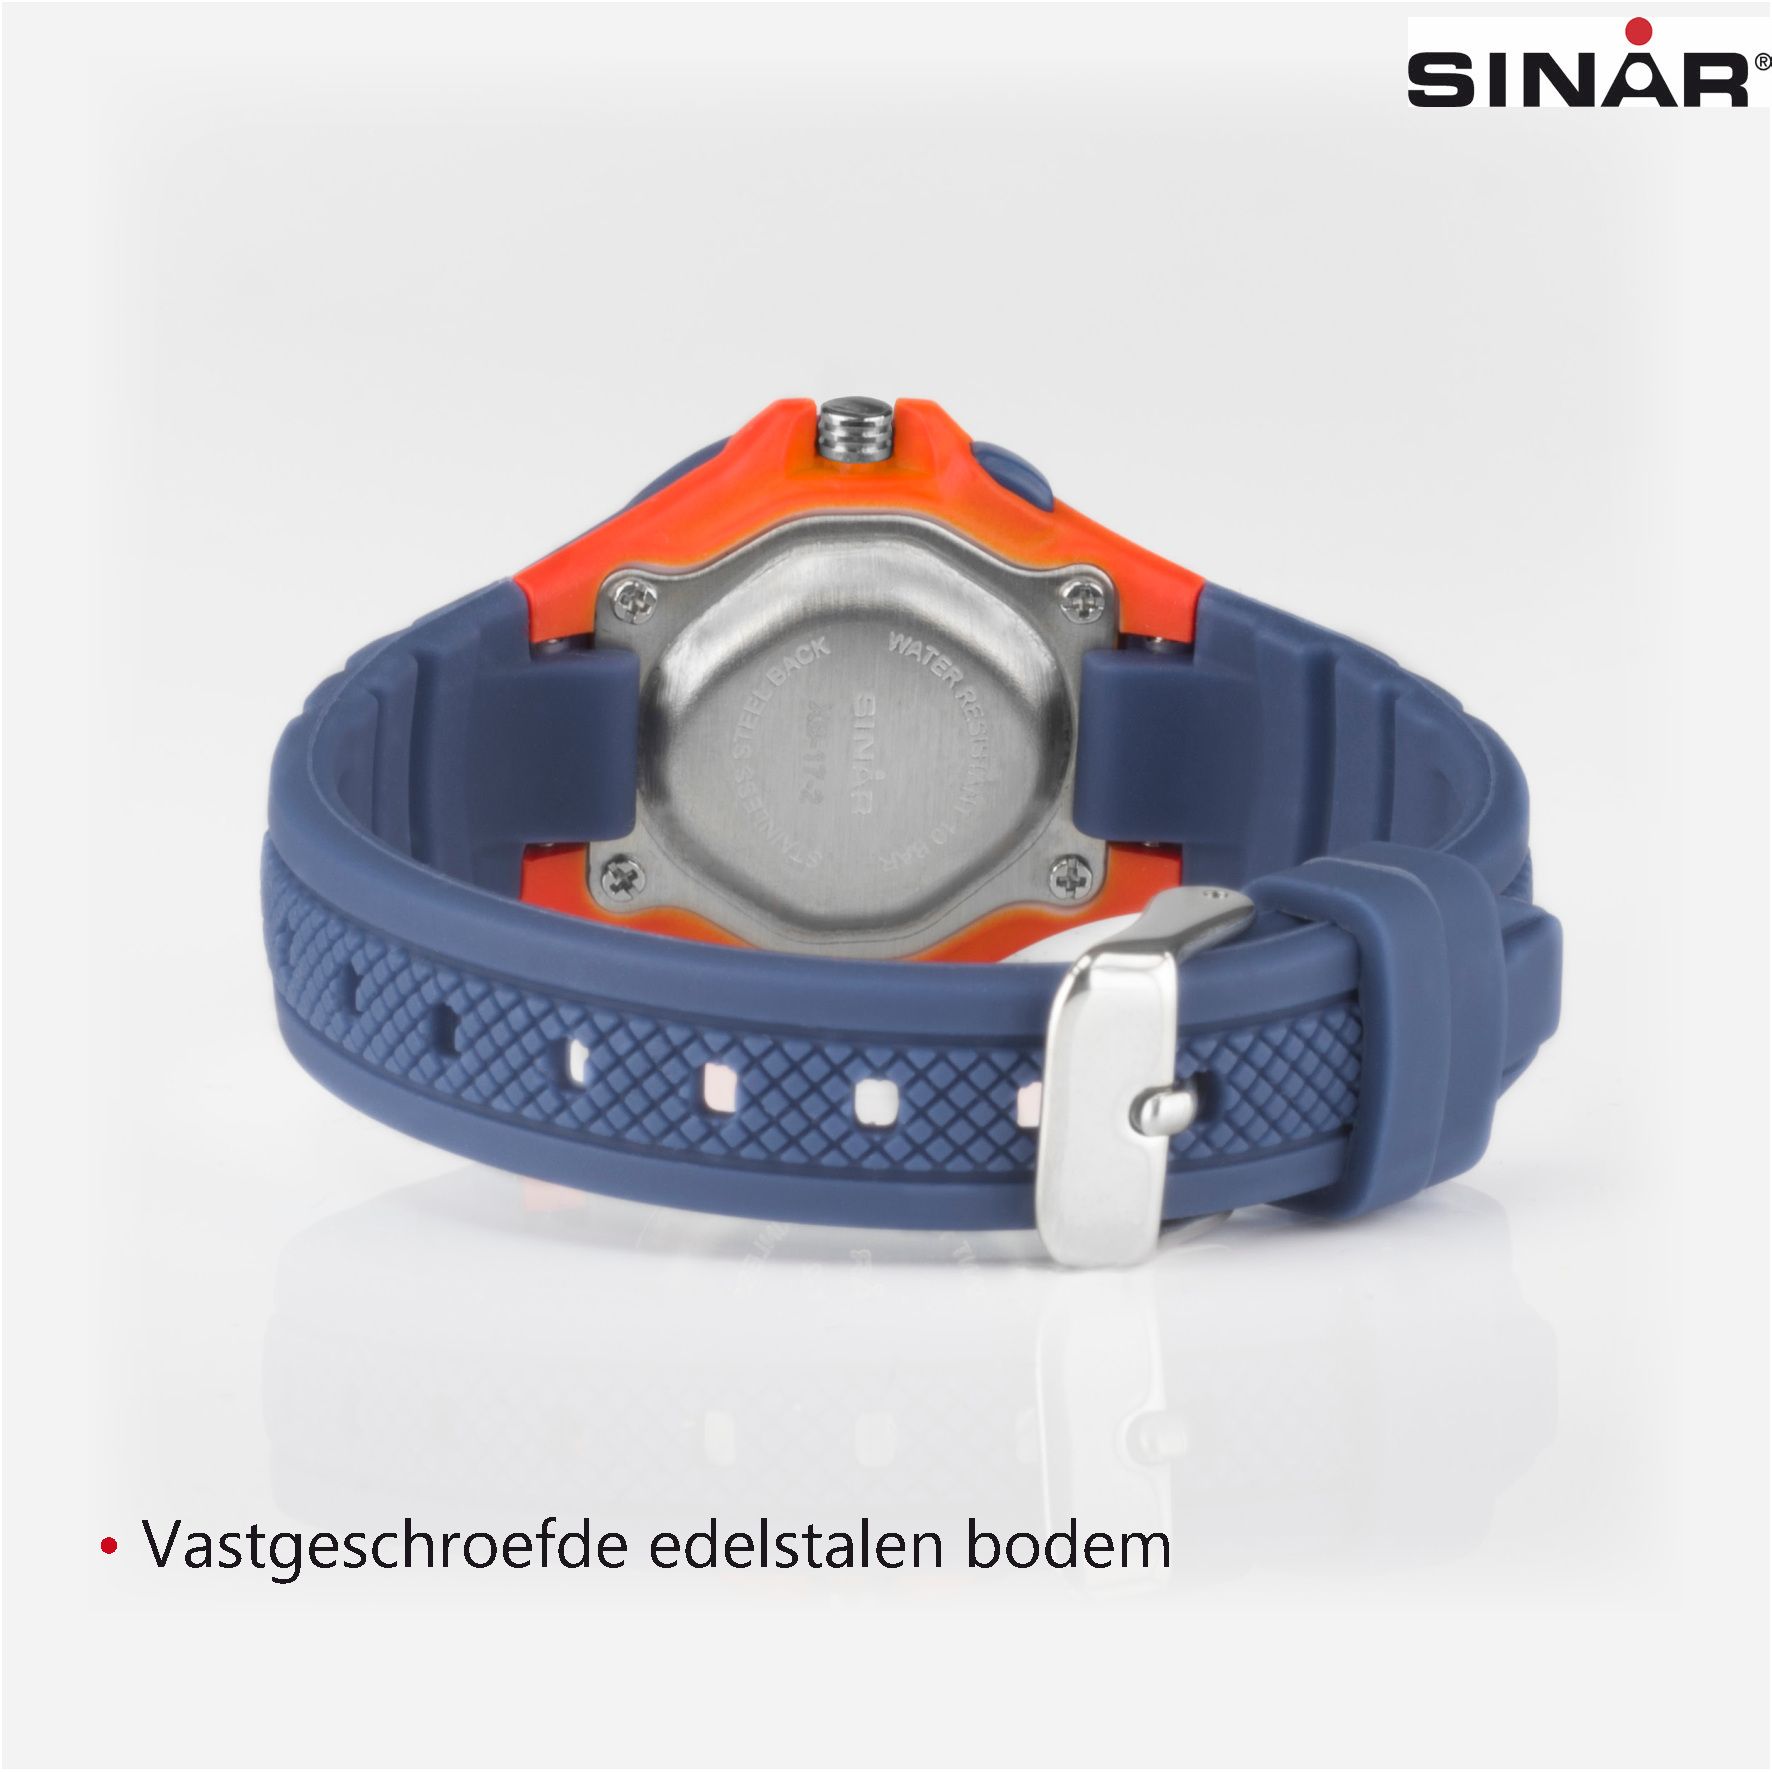 SINAR Analoog Horloge - 27 mm - 11,5-17 cm - Blauw/Oranje - XB-17-2